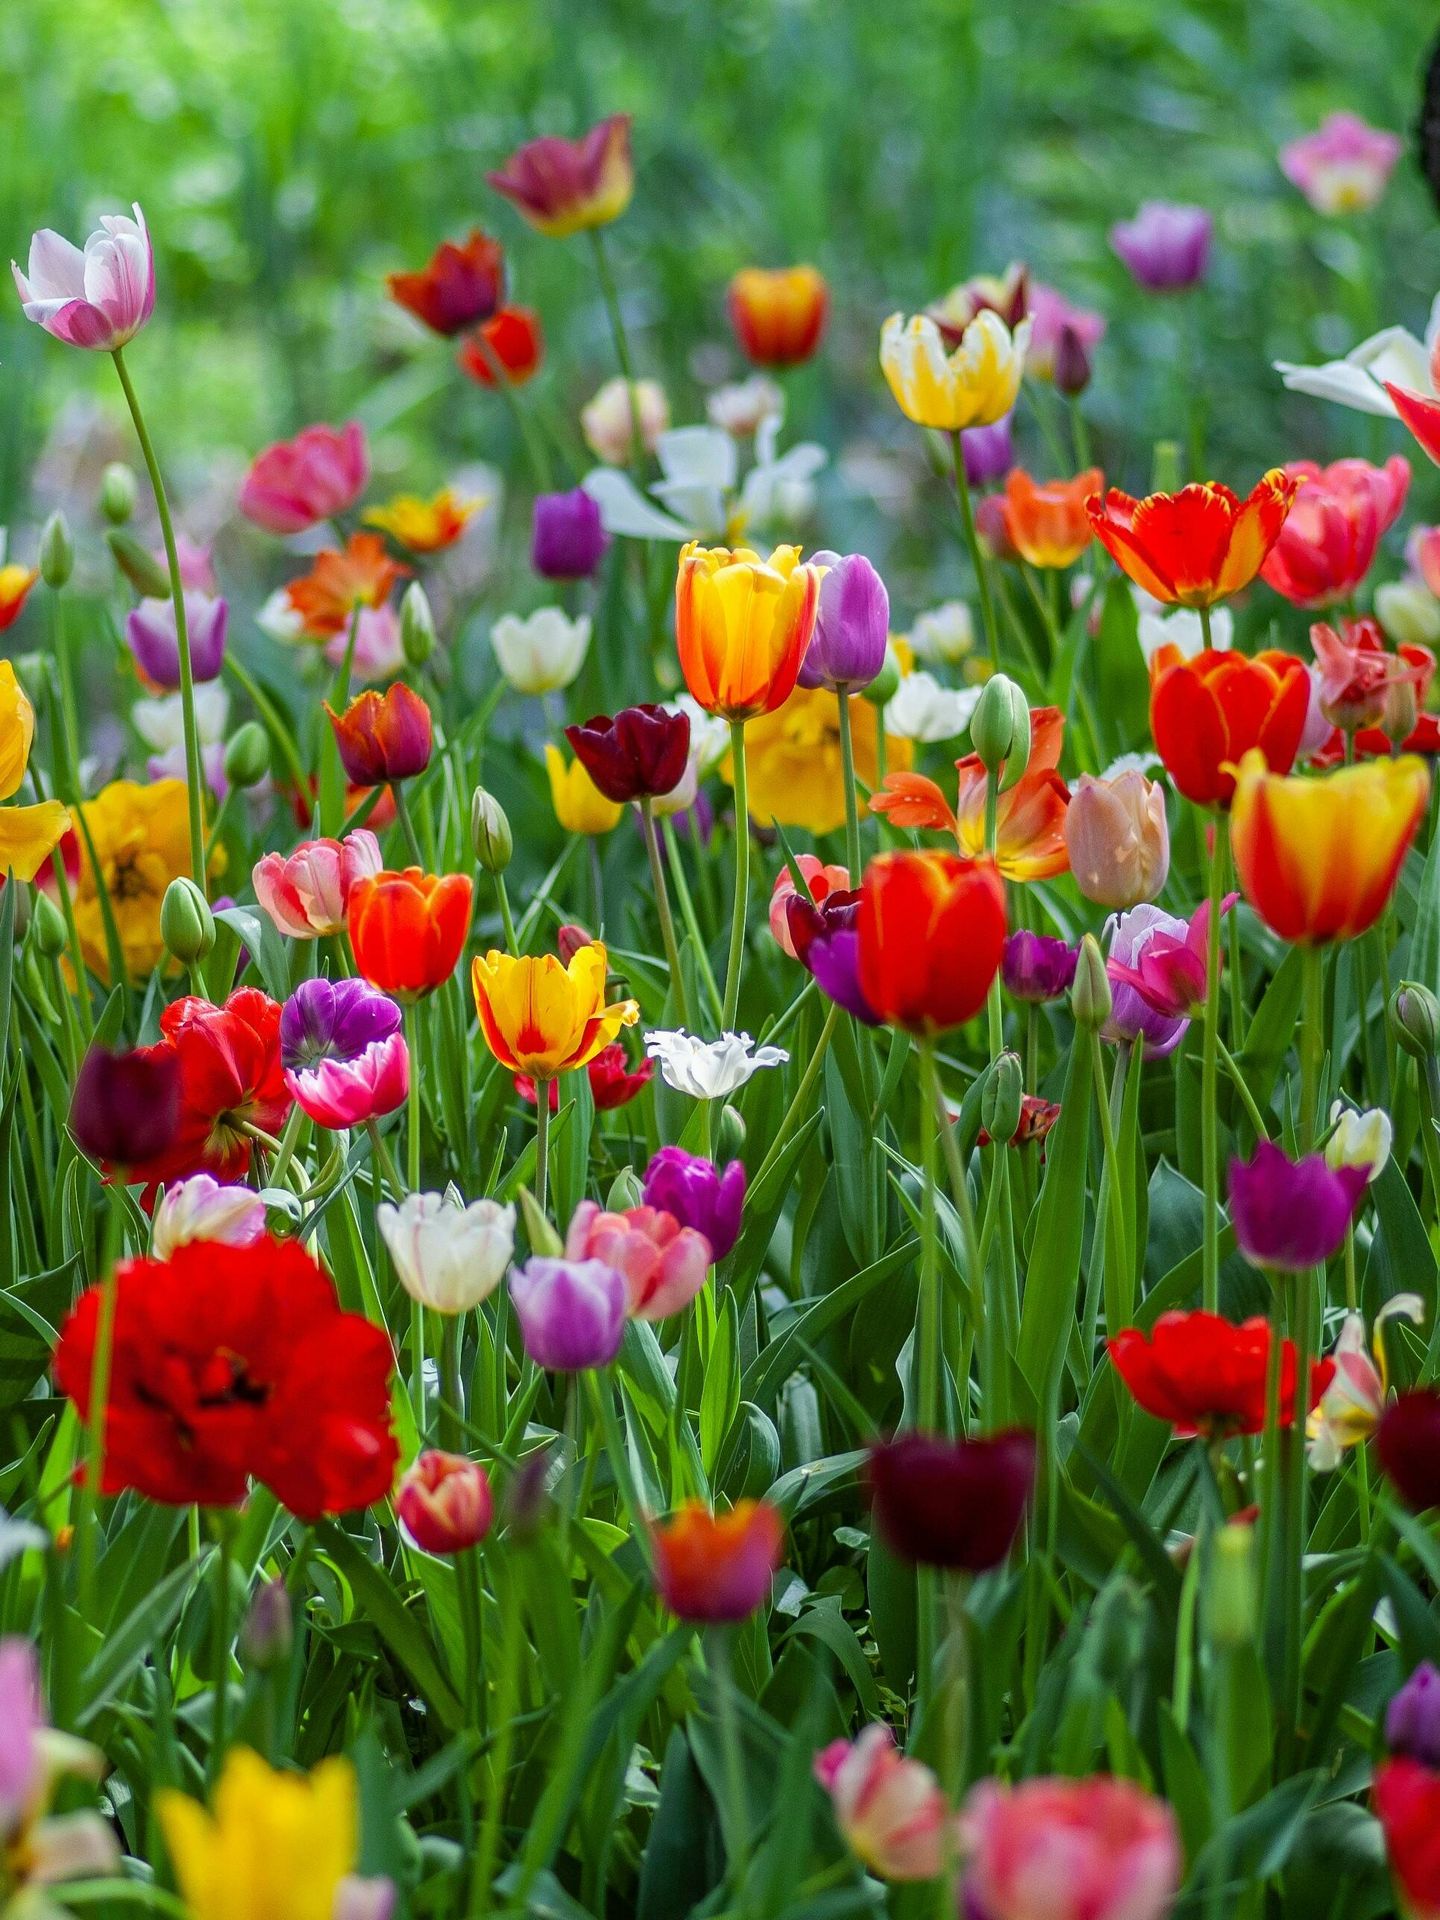 Tulipanes, flor de Holanda. (Cortesía)